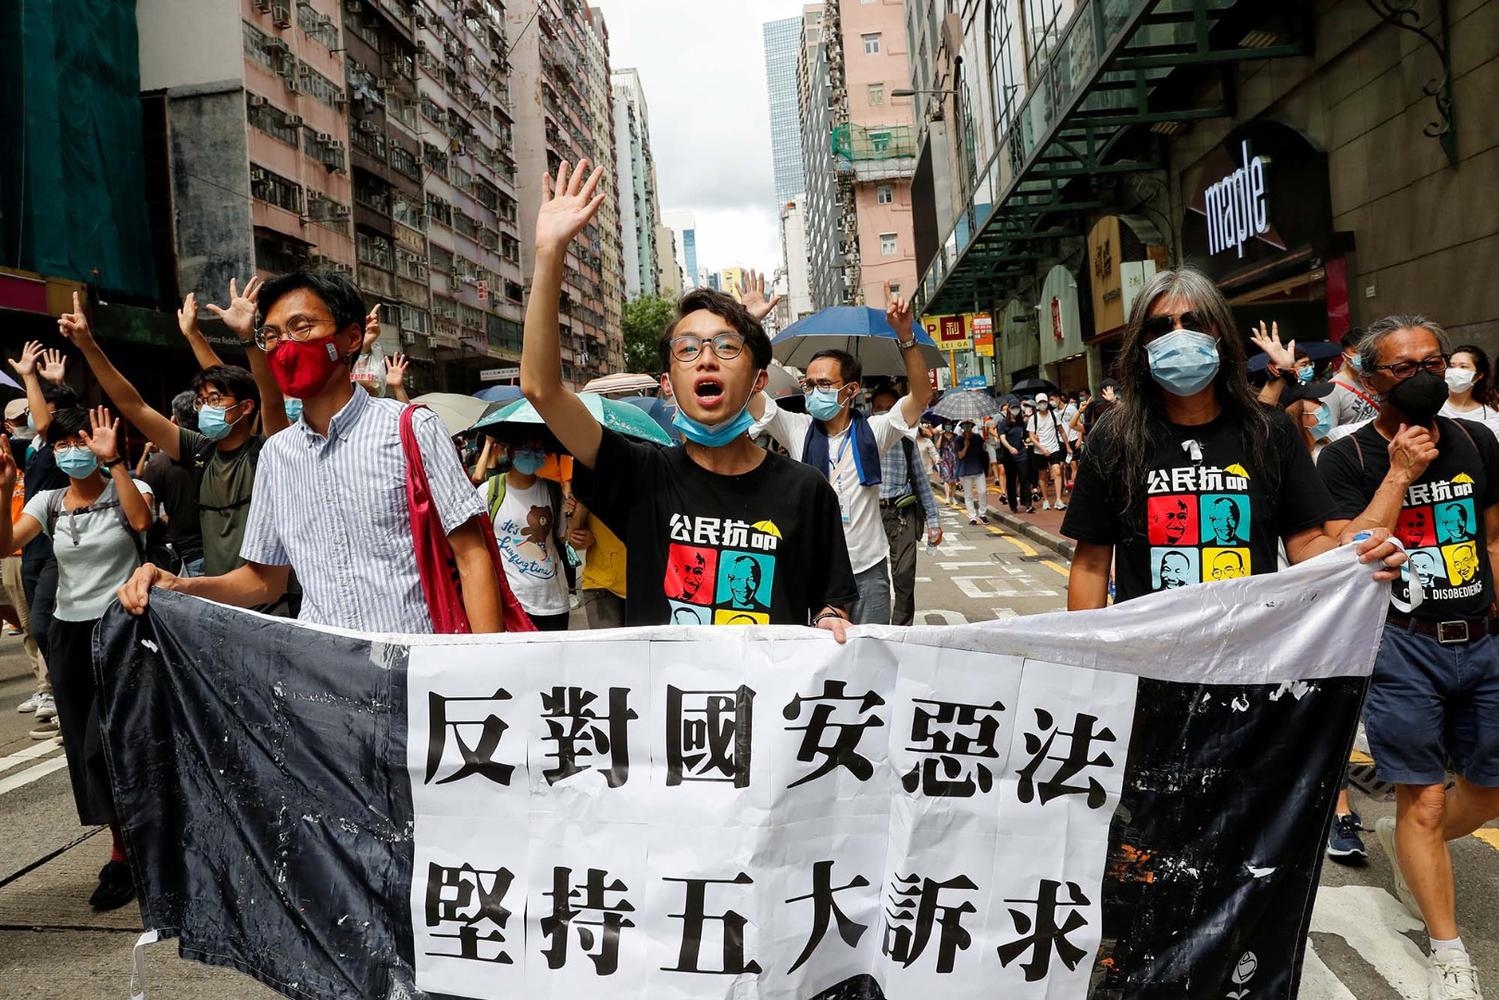 HONGKONG-PROTESTS/ANNIVERSARY